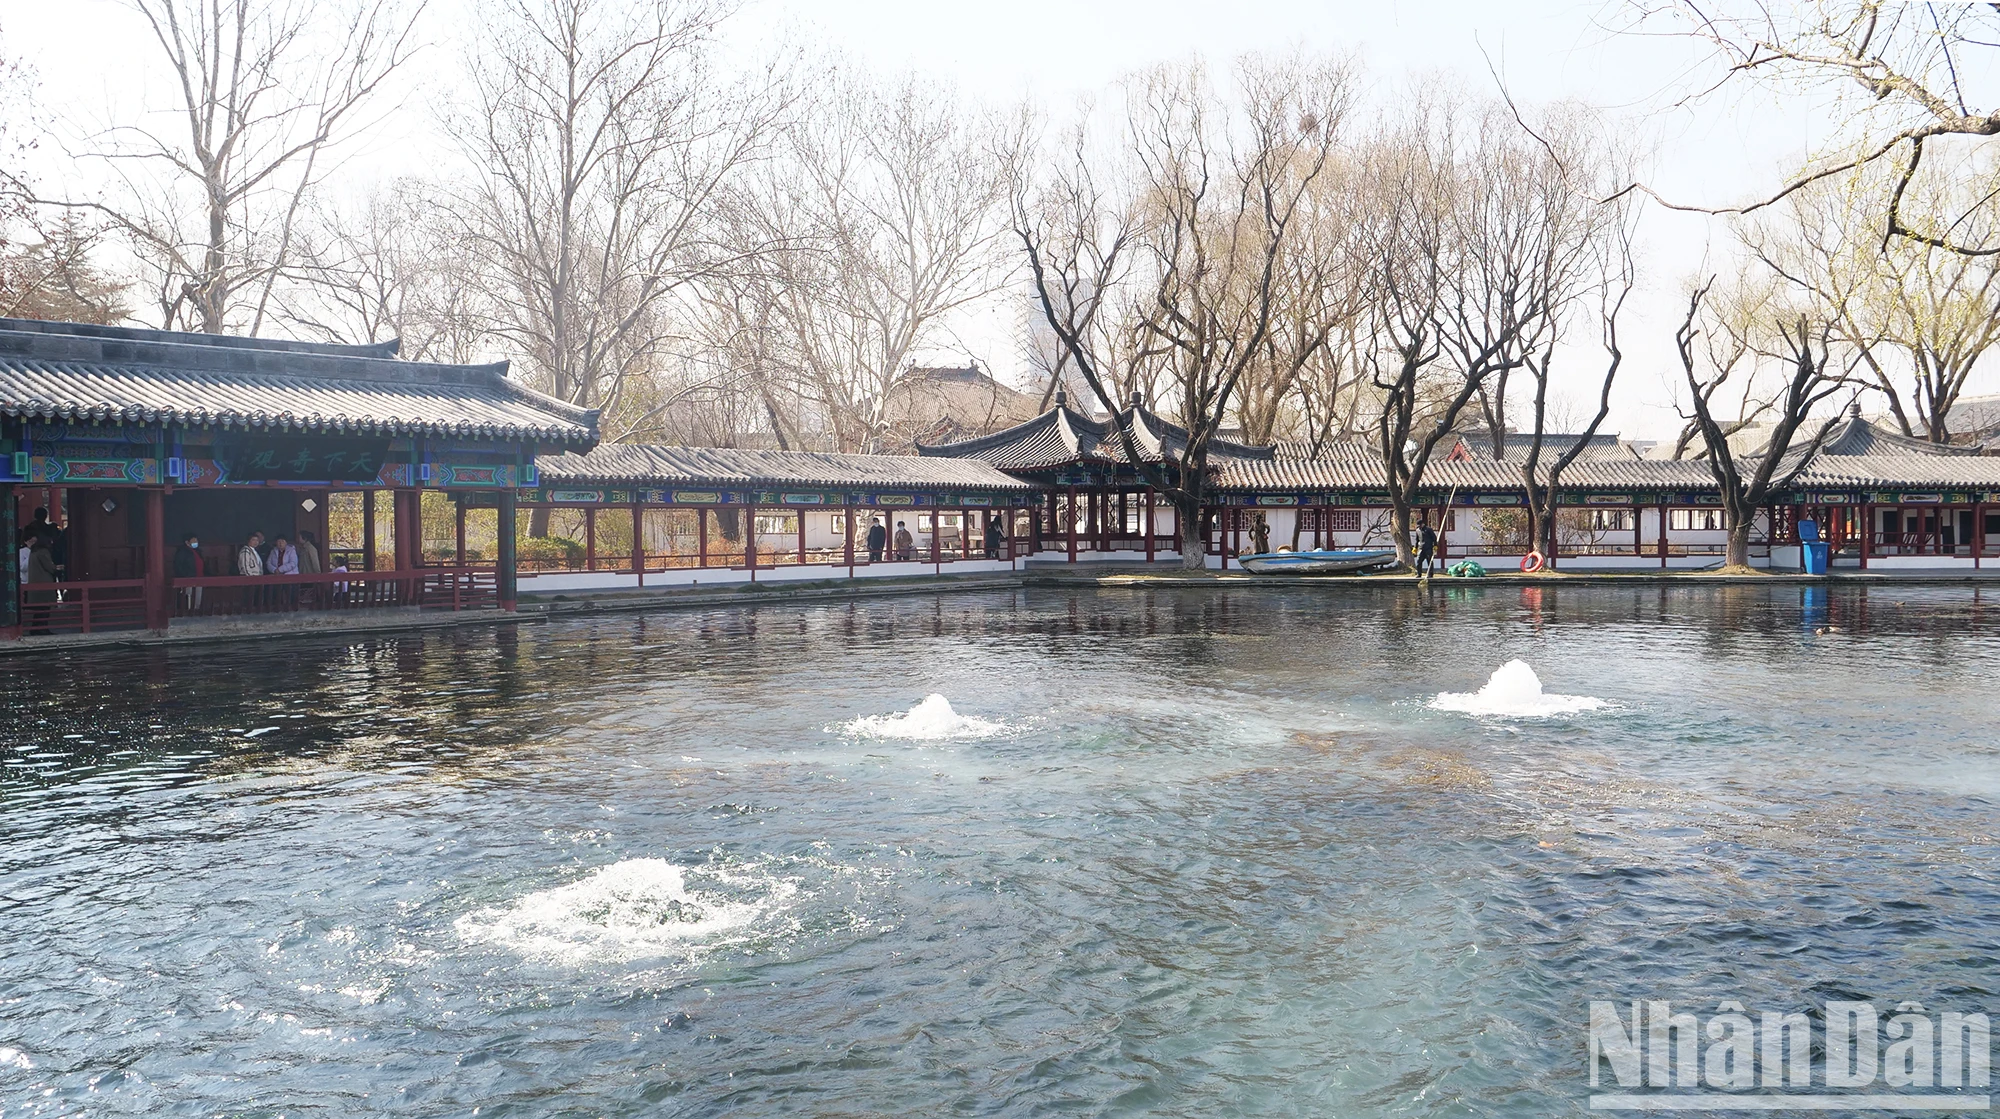 Trải nghiệm du lịch văn hóa thành cổ Minh Thủy ở Trung Quốc ảnh 6